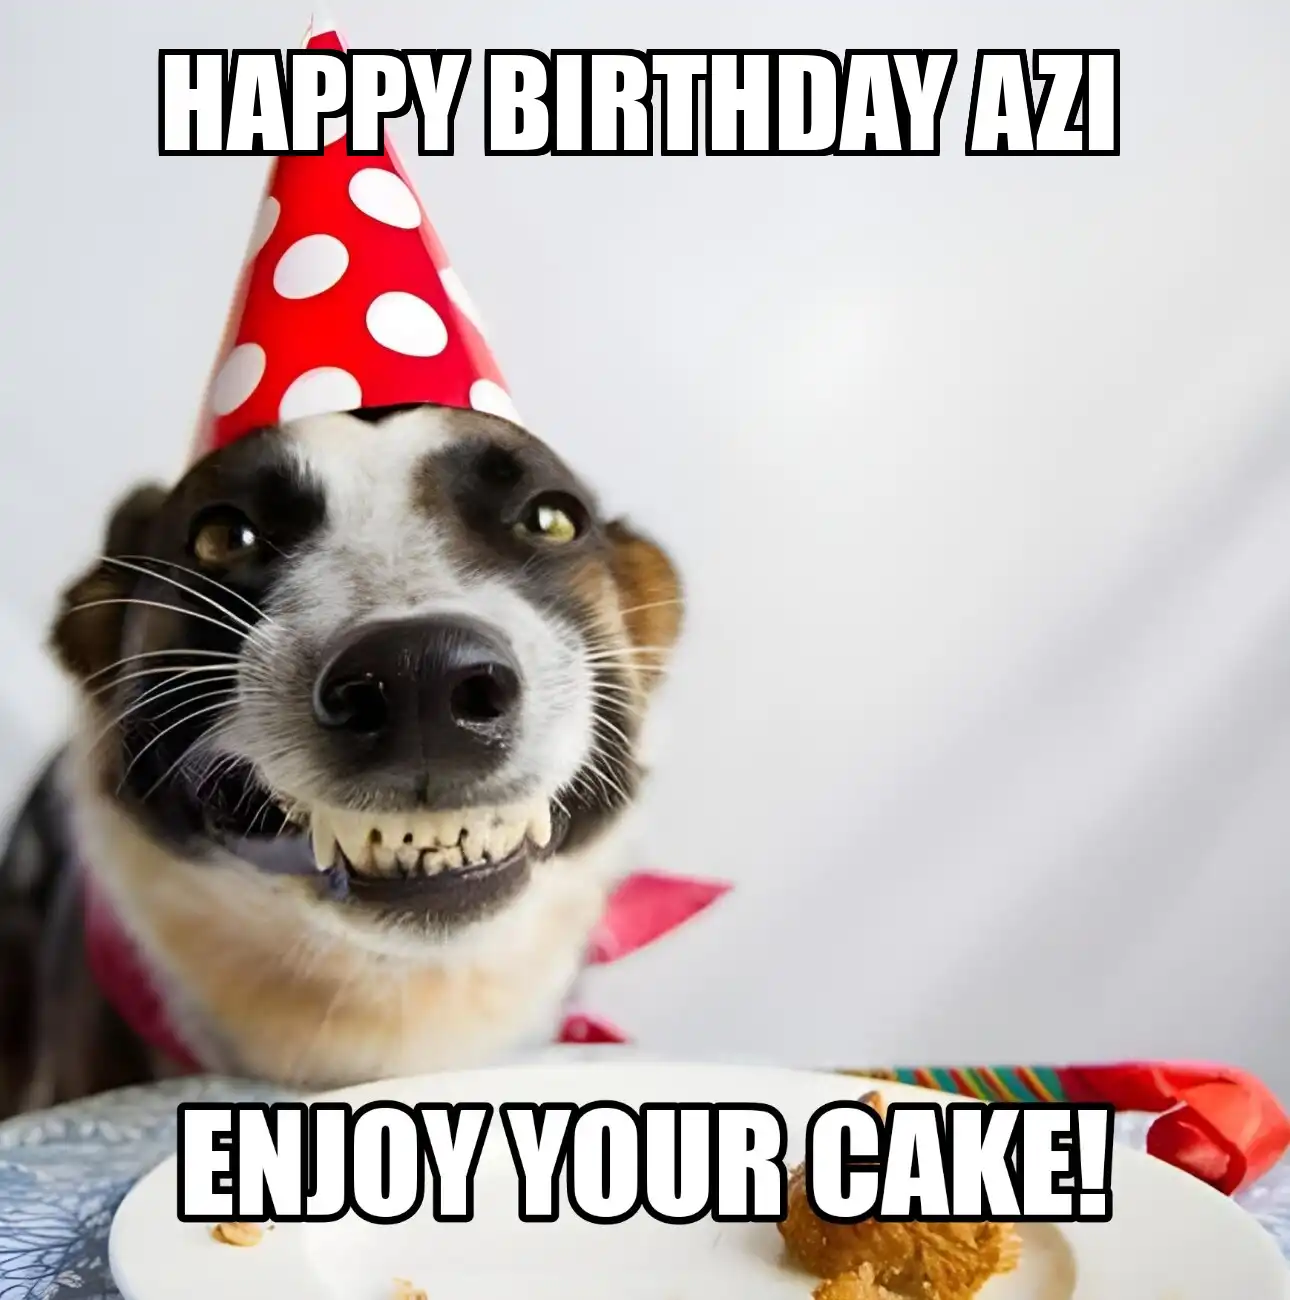 Happy Birthday Azi Enjoy Your Cake Dog Meme